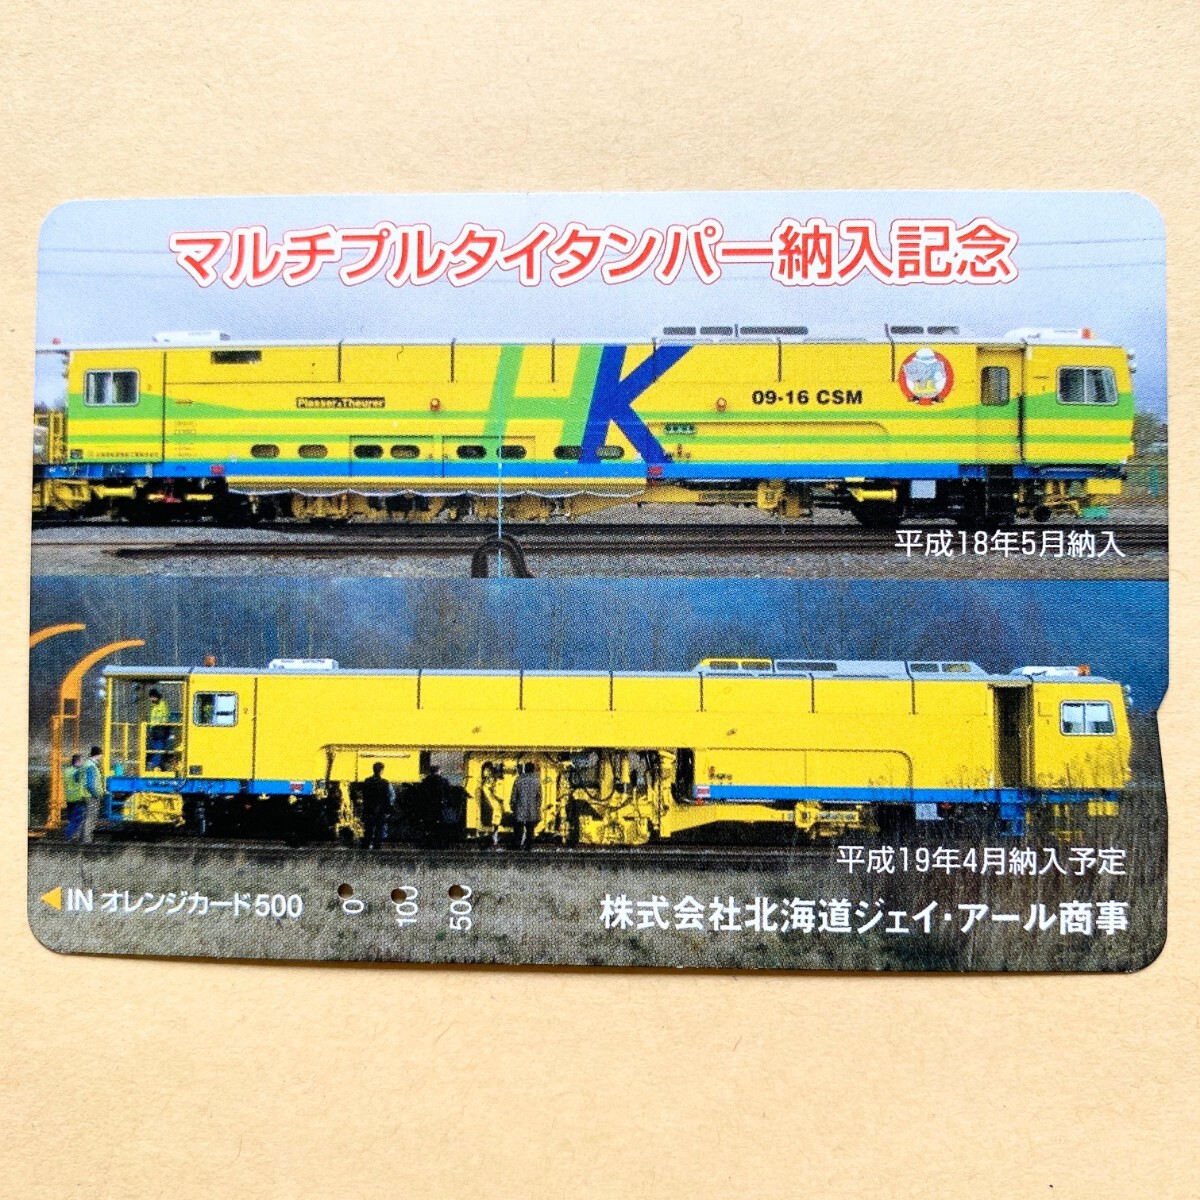 [ использованный ] Orange Card JR Hokkaido мульти- тянуть Thai темпер . входить память 